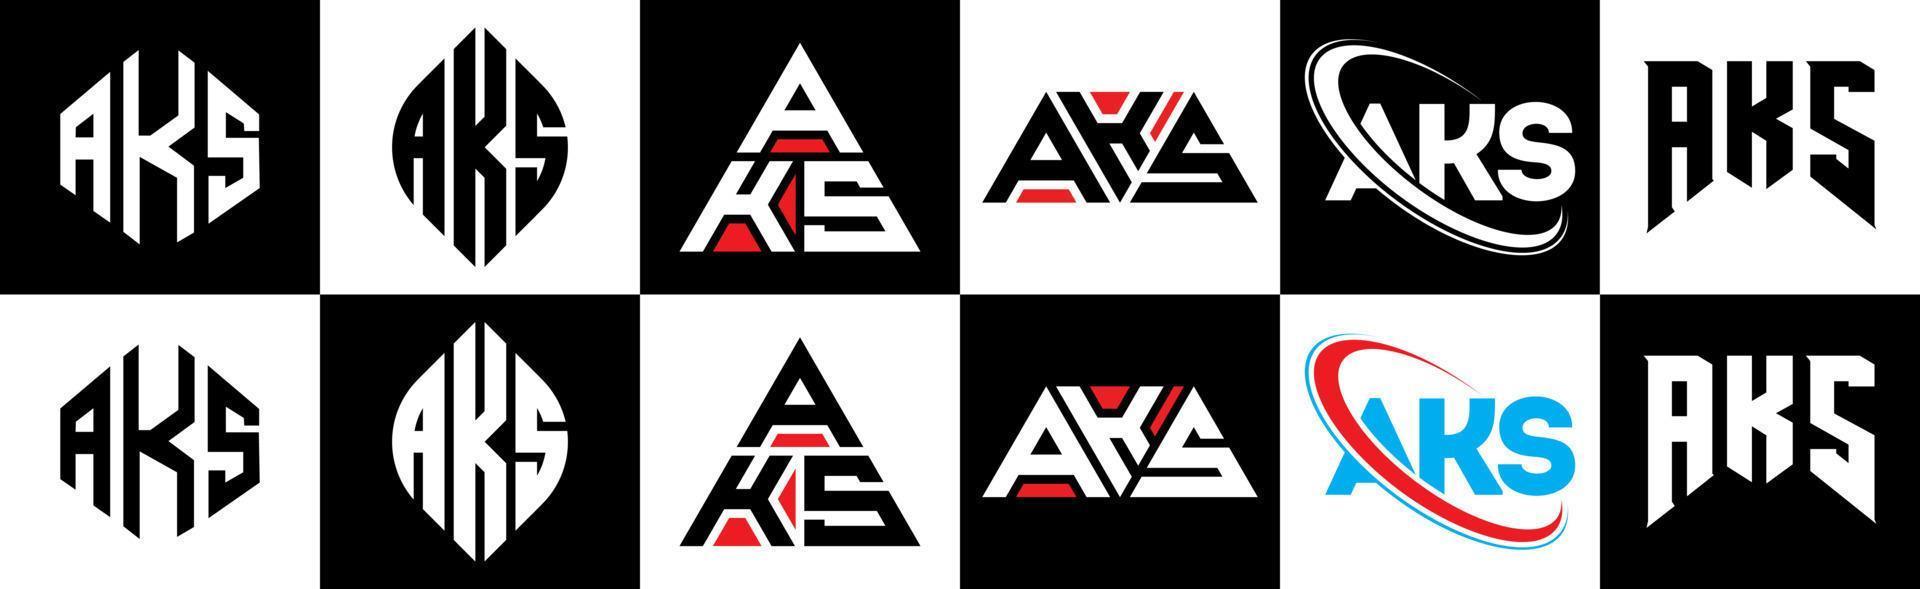 création de logo de lettre aks en six styles. aks polygone, cercle, triangle, hexagone, style plat et simple avec logo de lettre de variation de couleur noir et blanc dans un plan de travail. aks logo minimaliste et classique vecteur